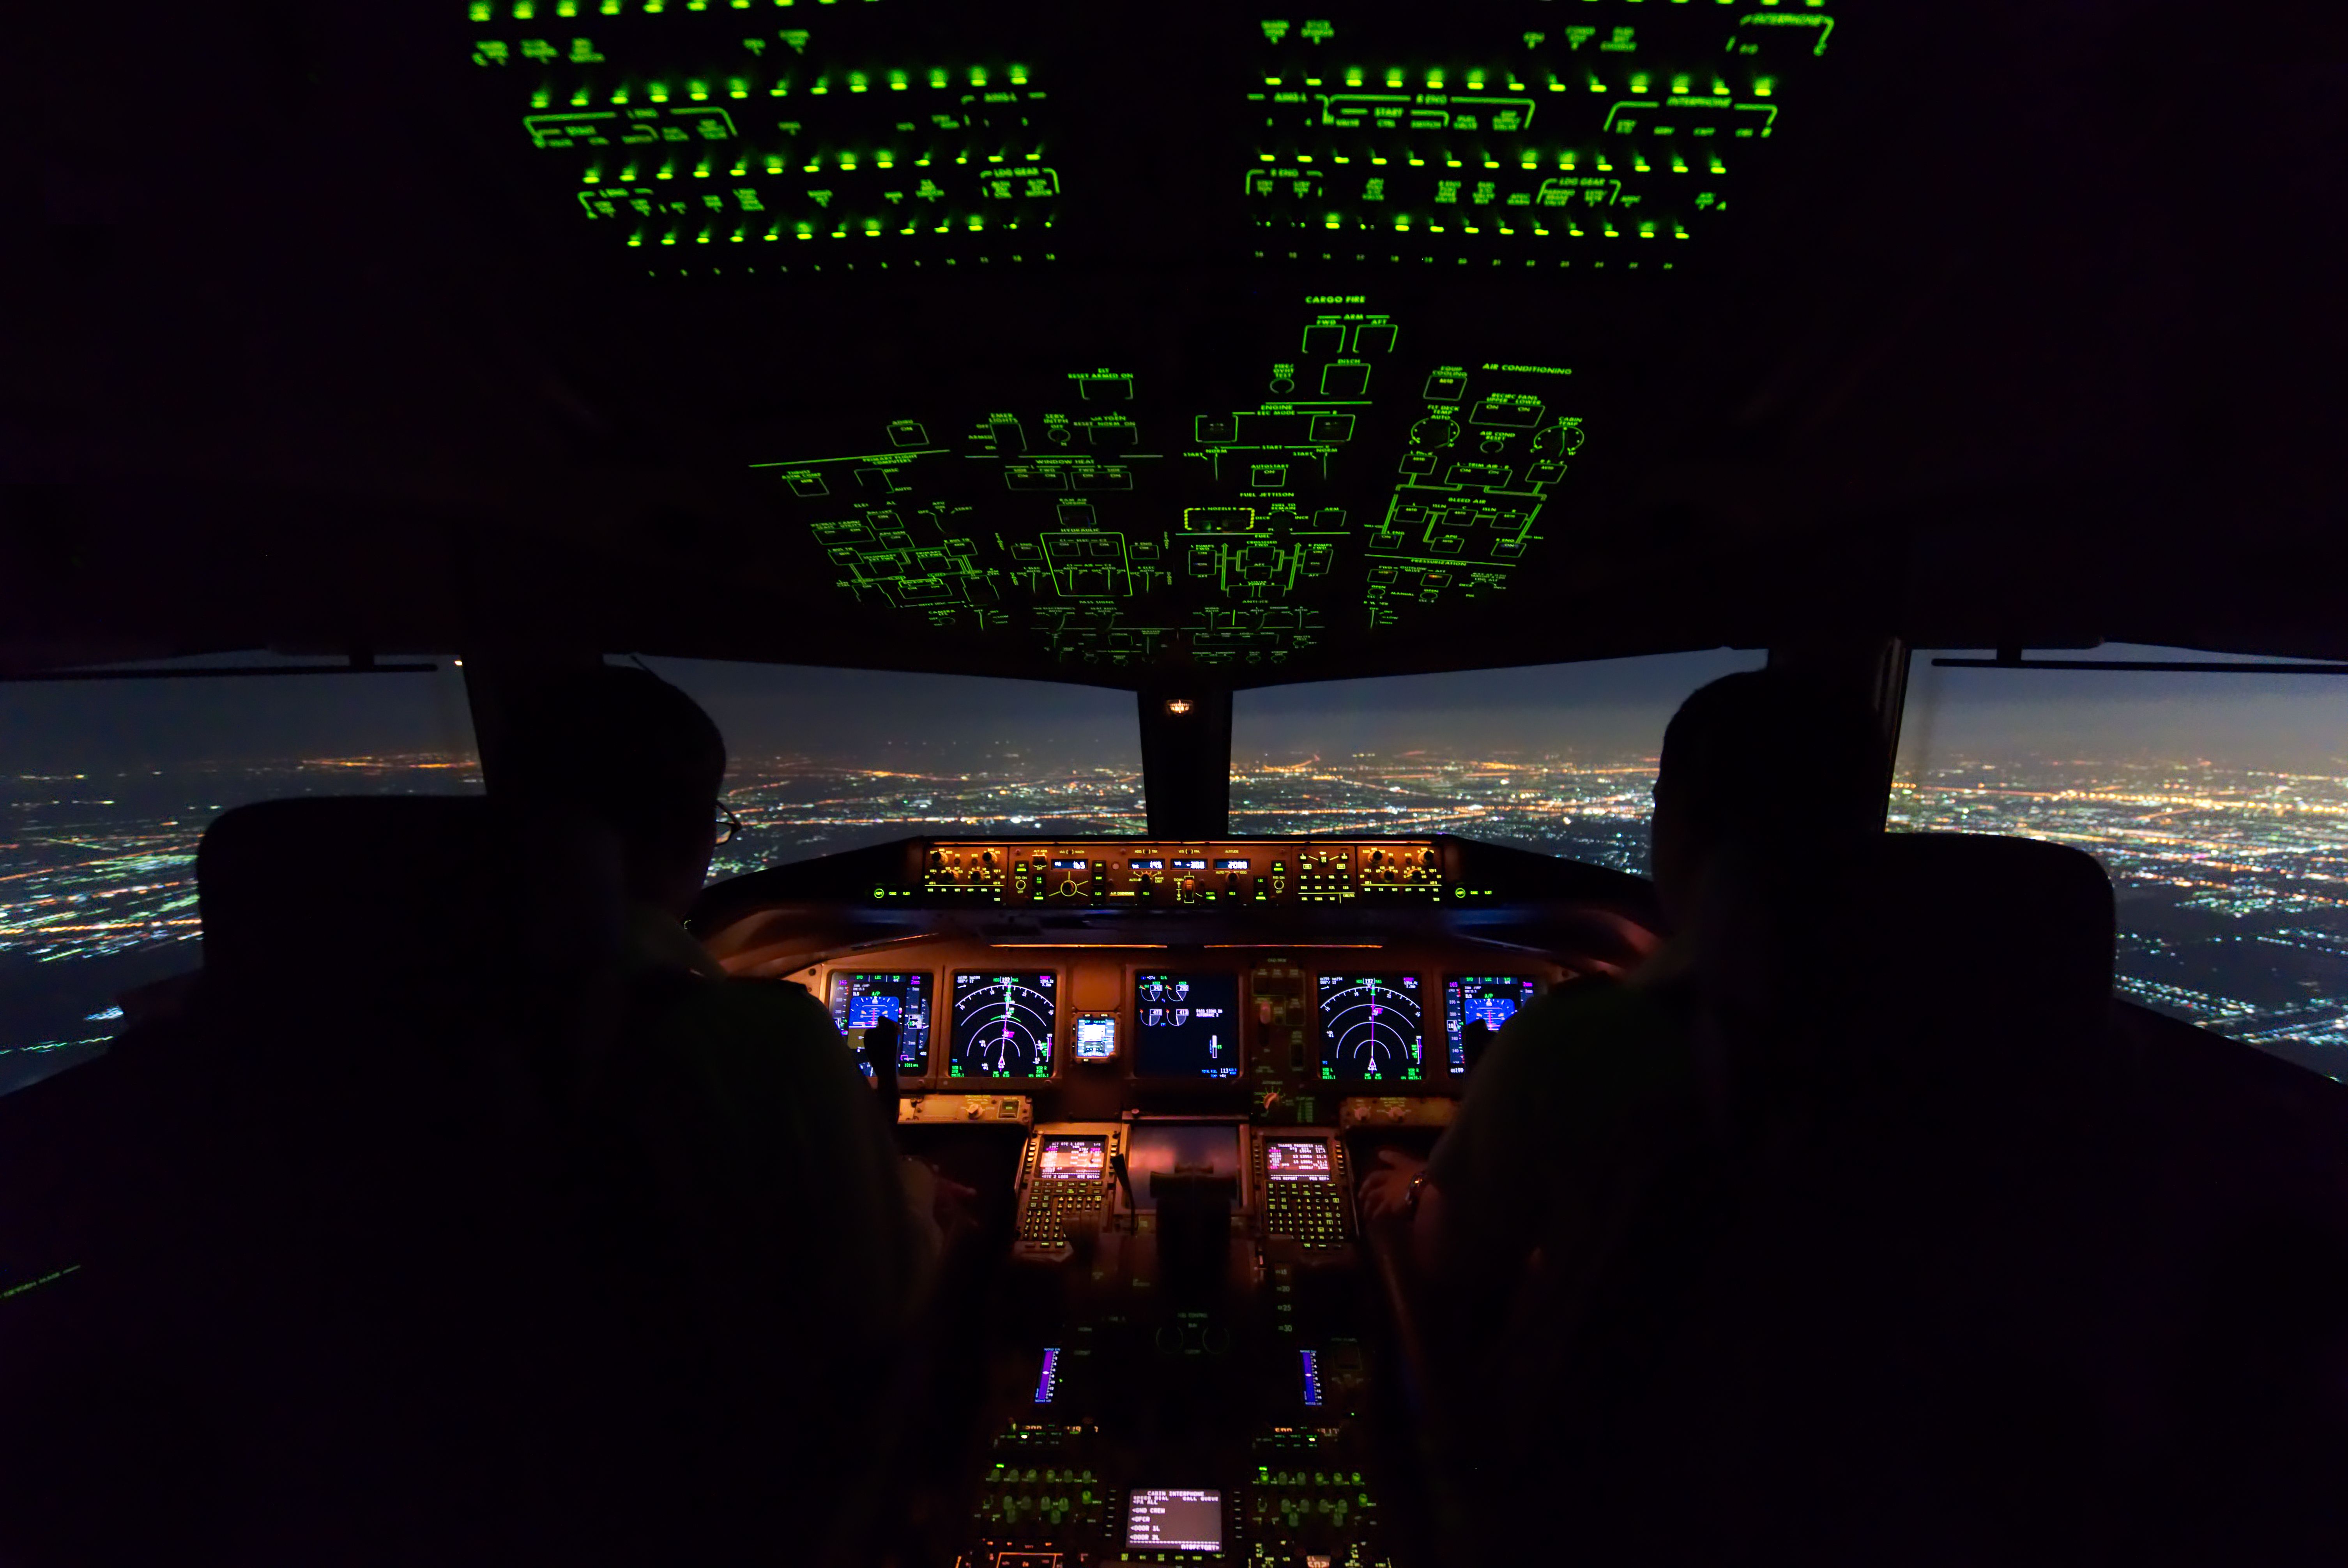 Inside A flight deck at night.